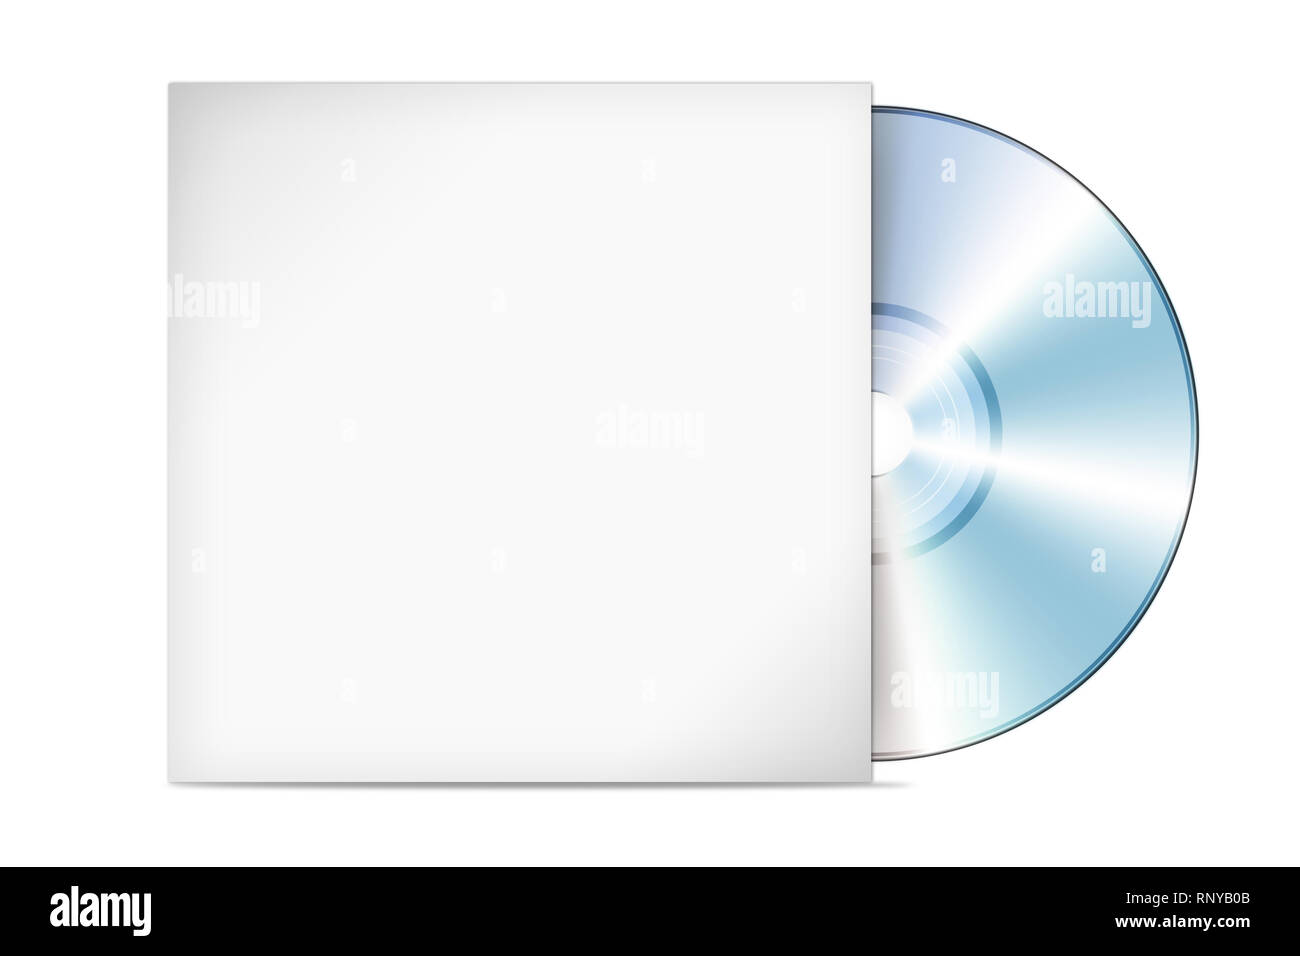 Caratula De Un Cd Disco compacto con la ilustración de la portada (CD, caja DVD Fotografía de  stock - Alamy